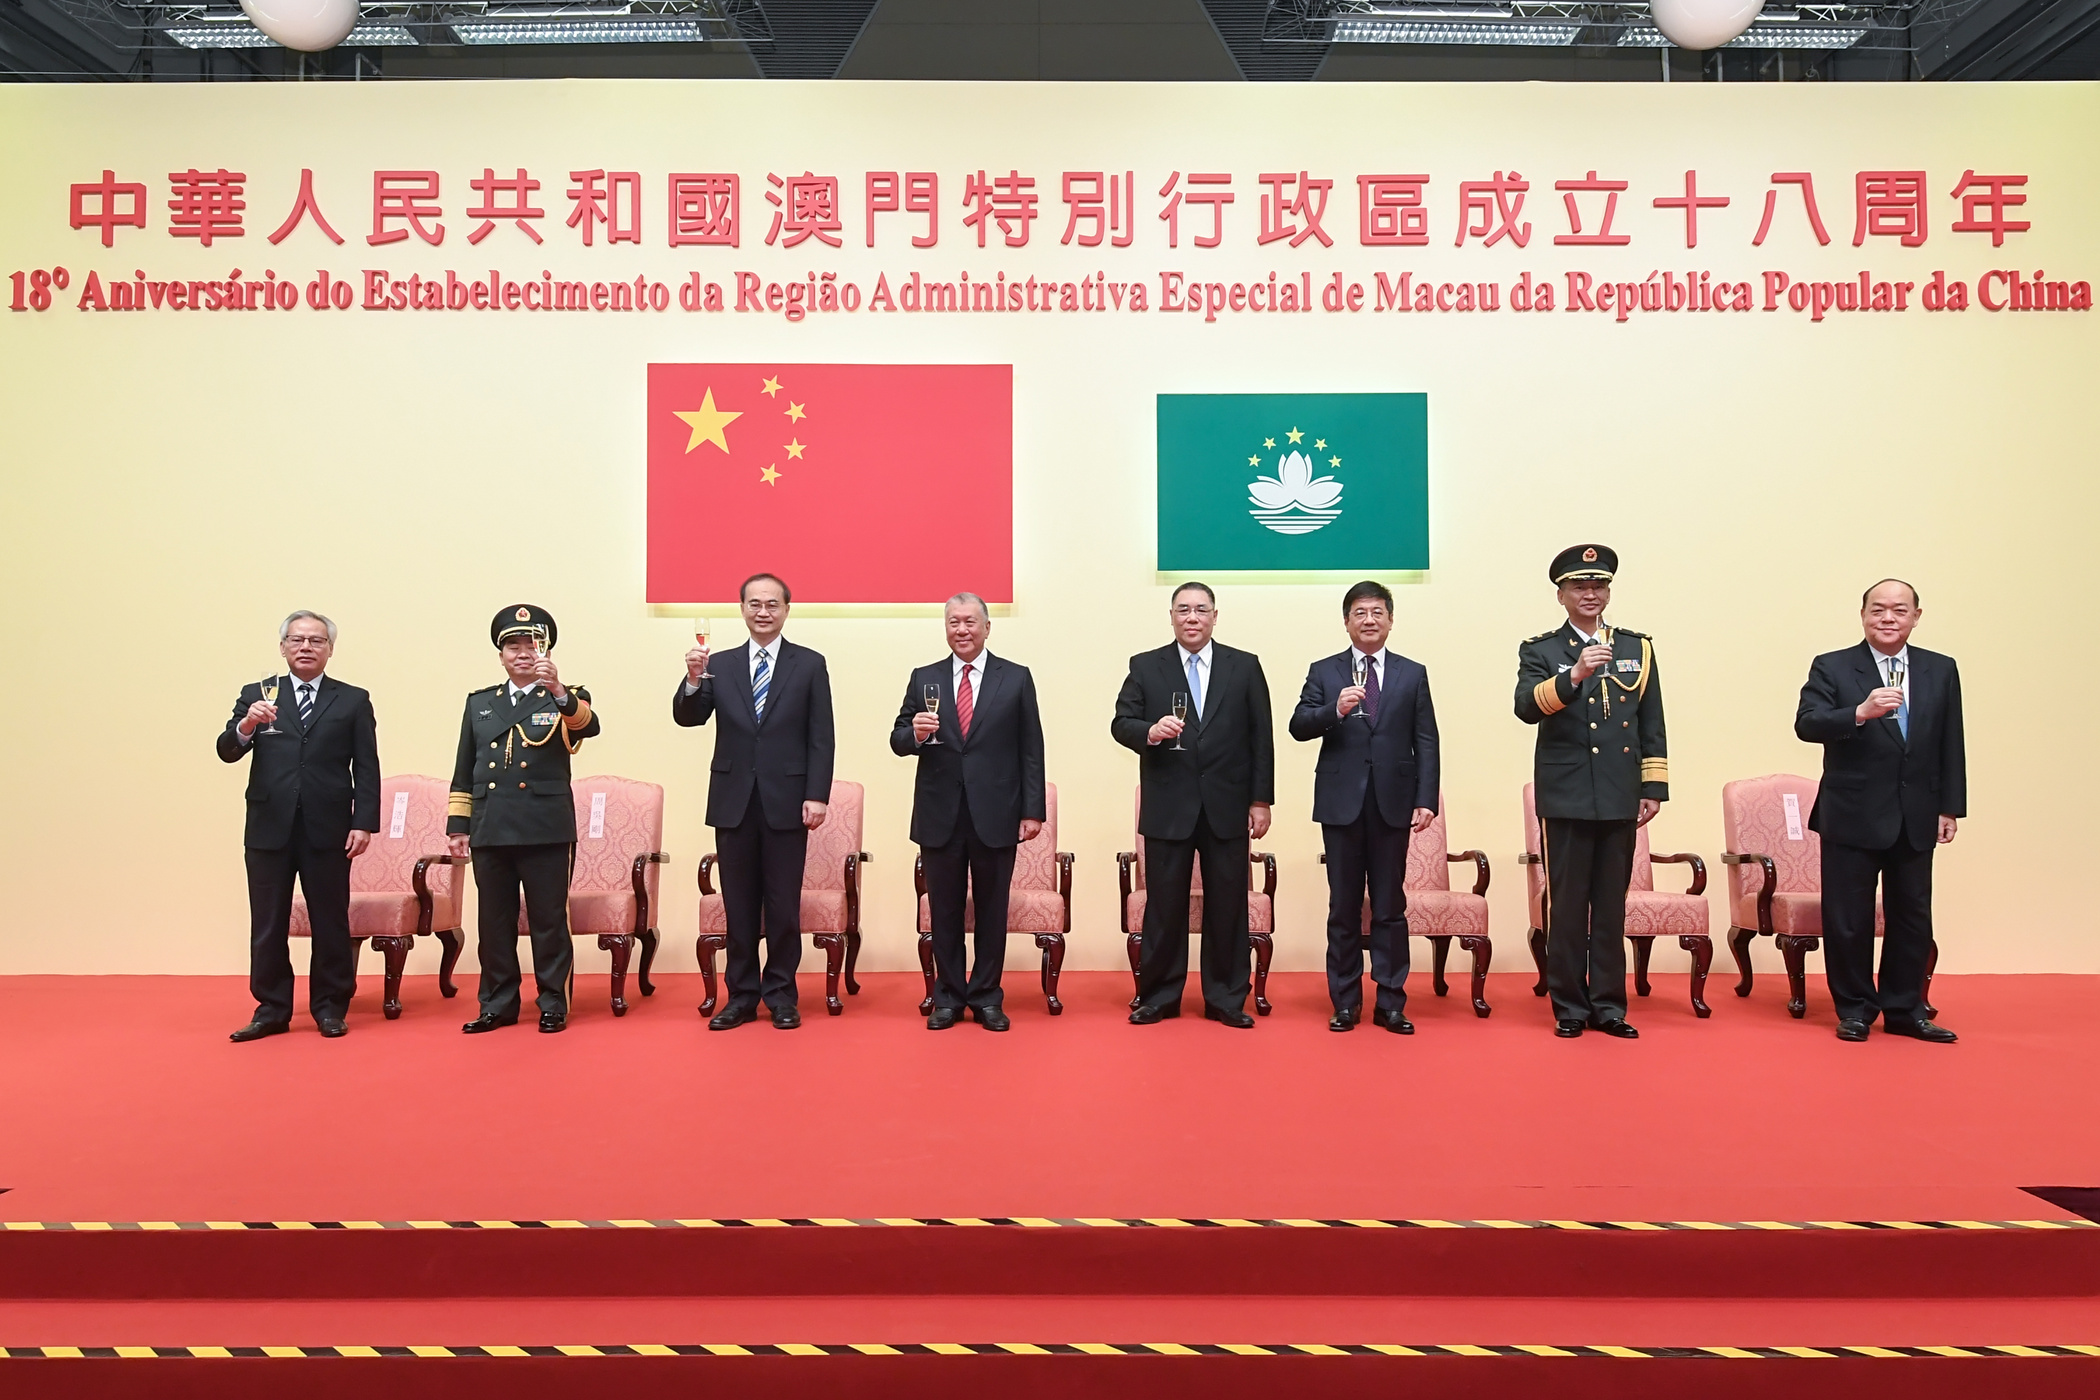 Chui Sai On | “Um país, dois sistemas”, uma política privilegiada para Macau